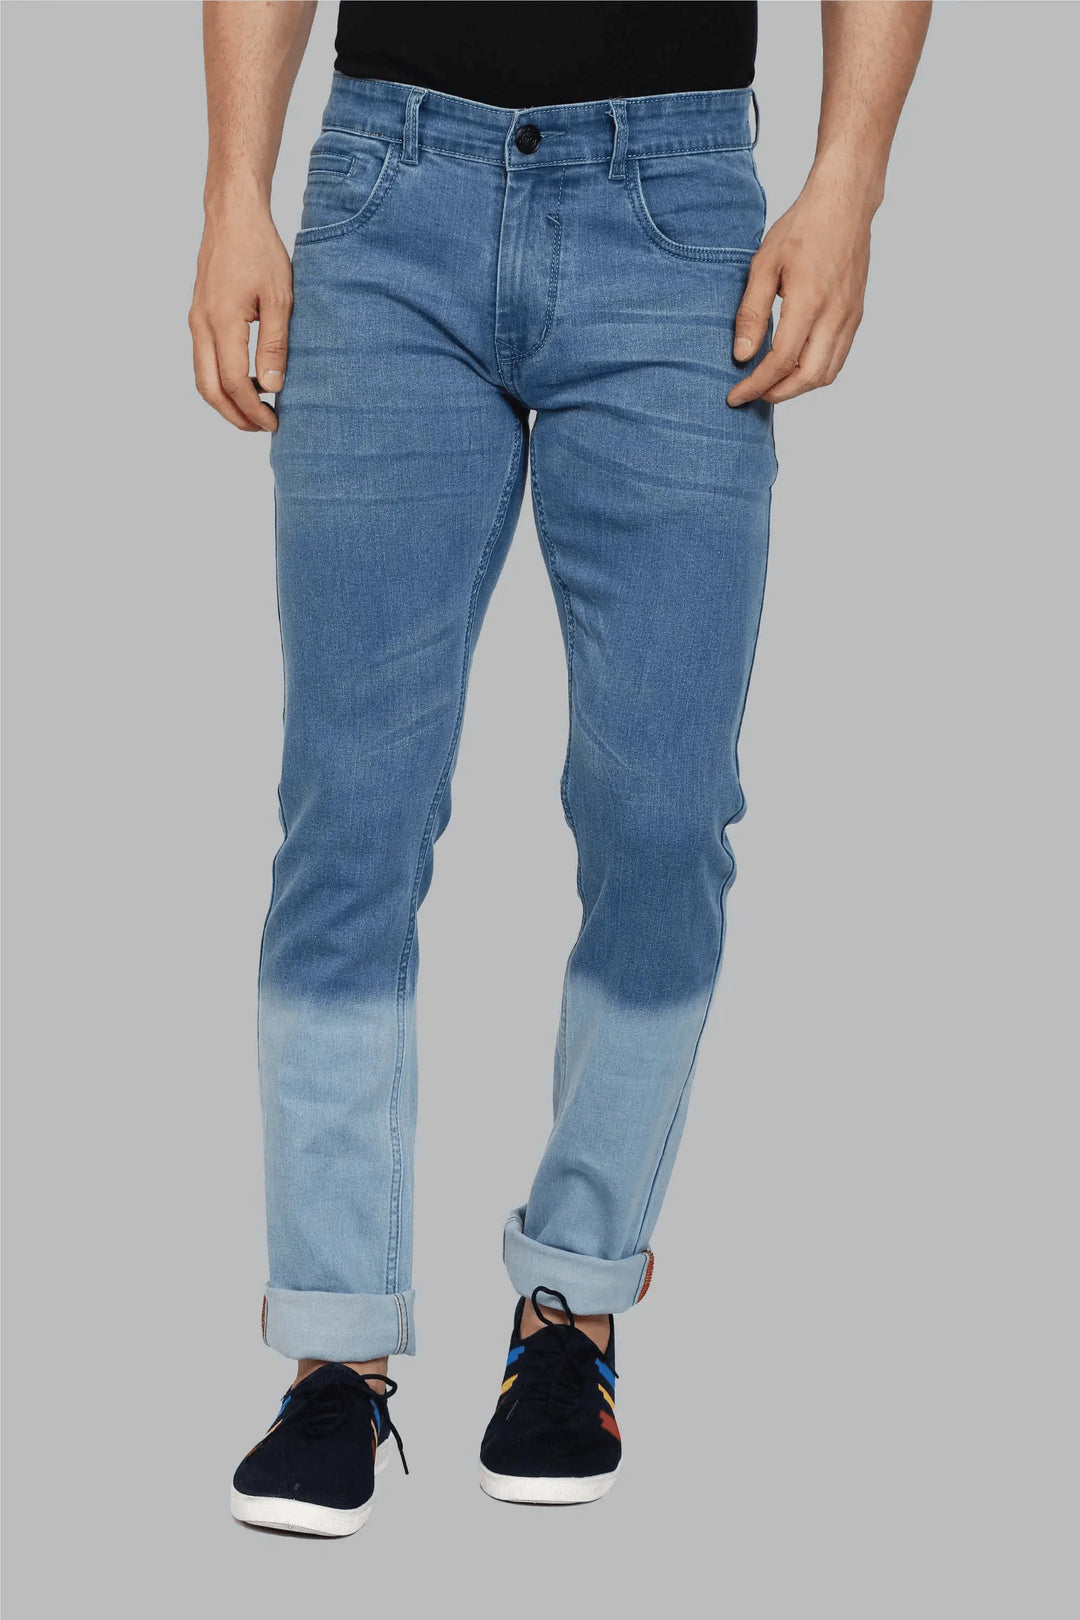 Slim Fit Blue Ombre Design Premium Denim Jeans For Men - Peplos Jeans 